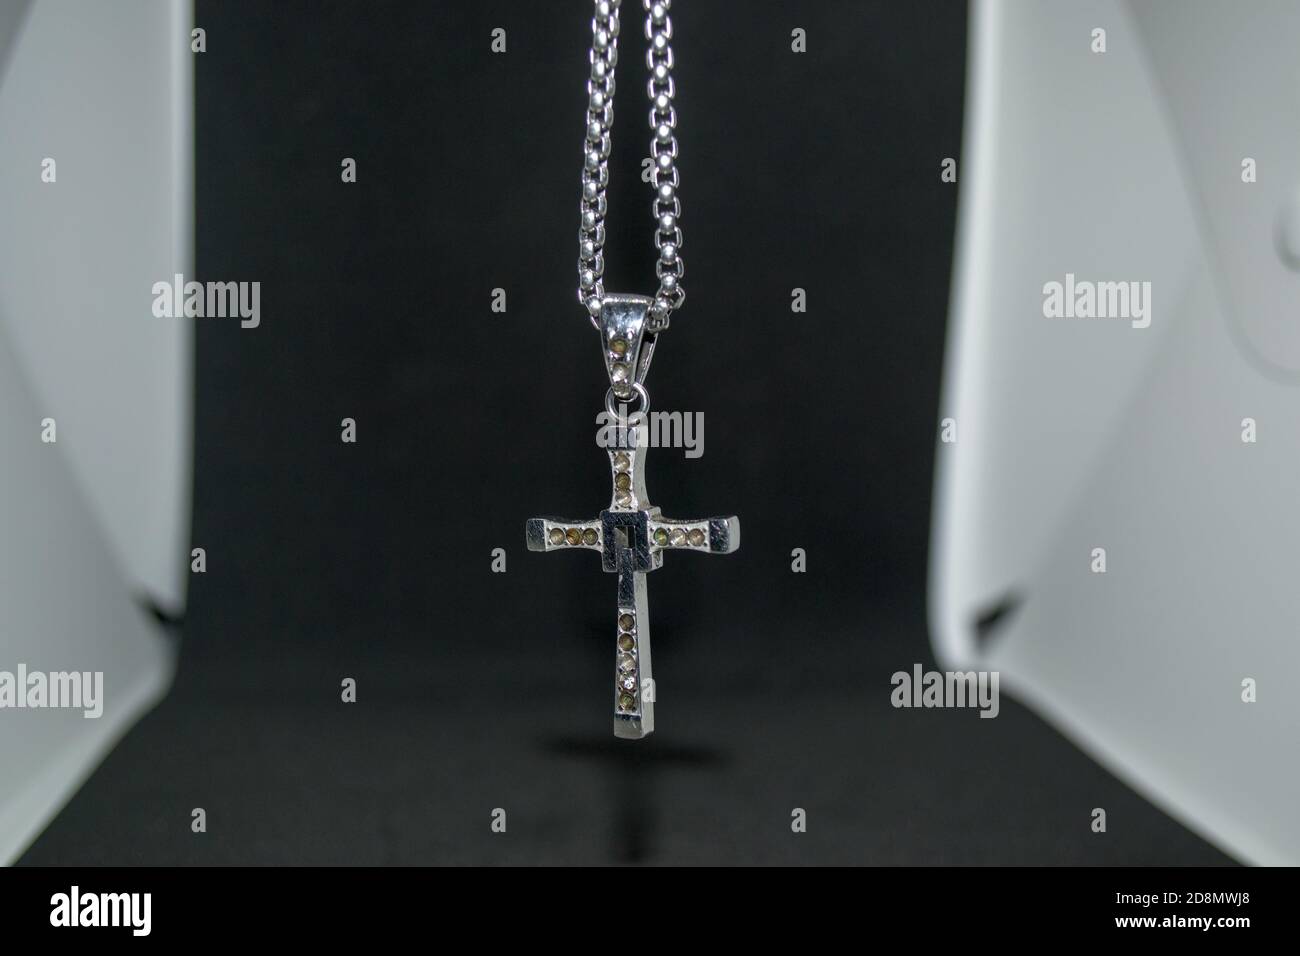 Nahaufnahme eines silbernen Metall christian Kreuz Halskette / Anhänger oder Silber Metall Kruzifix Halskette / Anhänger auf einem schwarz-weiß hängen Hintergrund Stockfoto